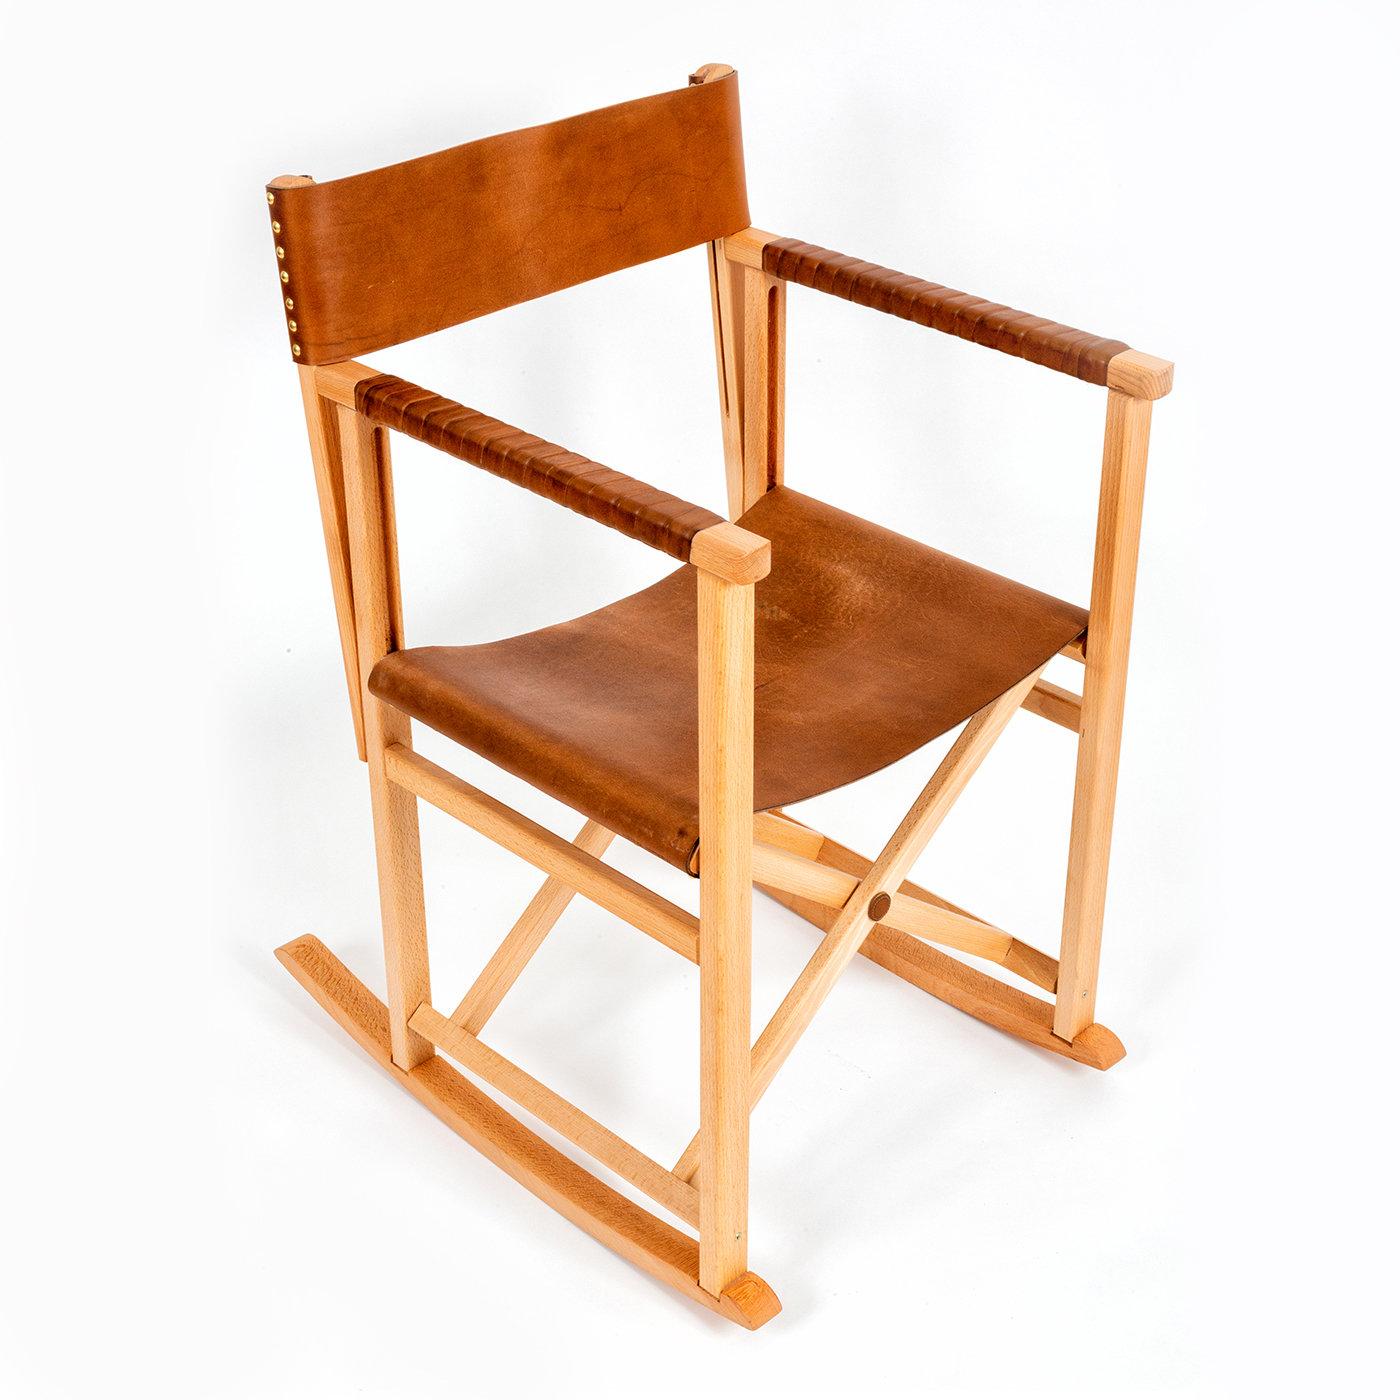 Ein meisterhaftes Beispiel für elegantes und vielseitiges Design. Dieser Schaukelstuhl hat eine robuste Struktur aus Eichenholz mit Rückenlehne und Sitzfläche (H 48 cm) aus hochwertigem Leder, das auch die linearen Armlehnen bedeckt, um zusätzlichen